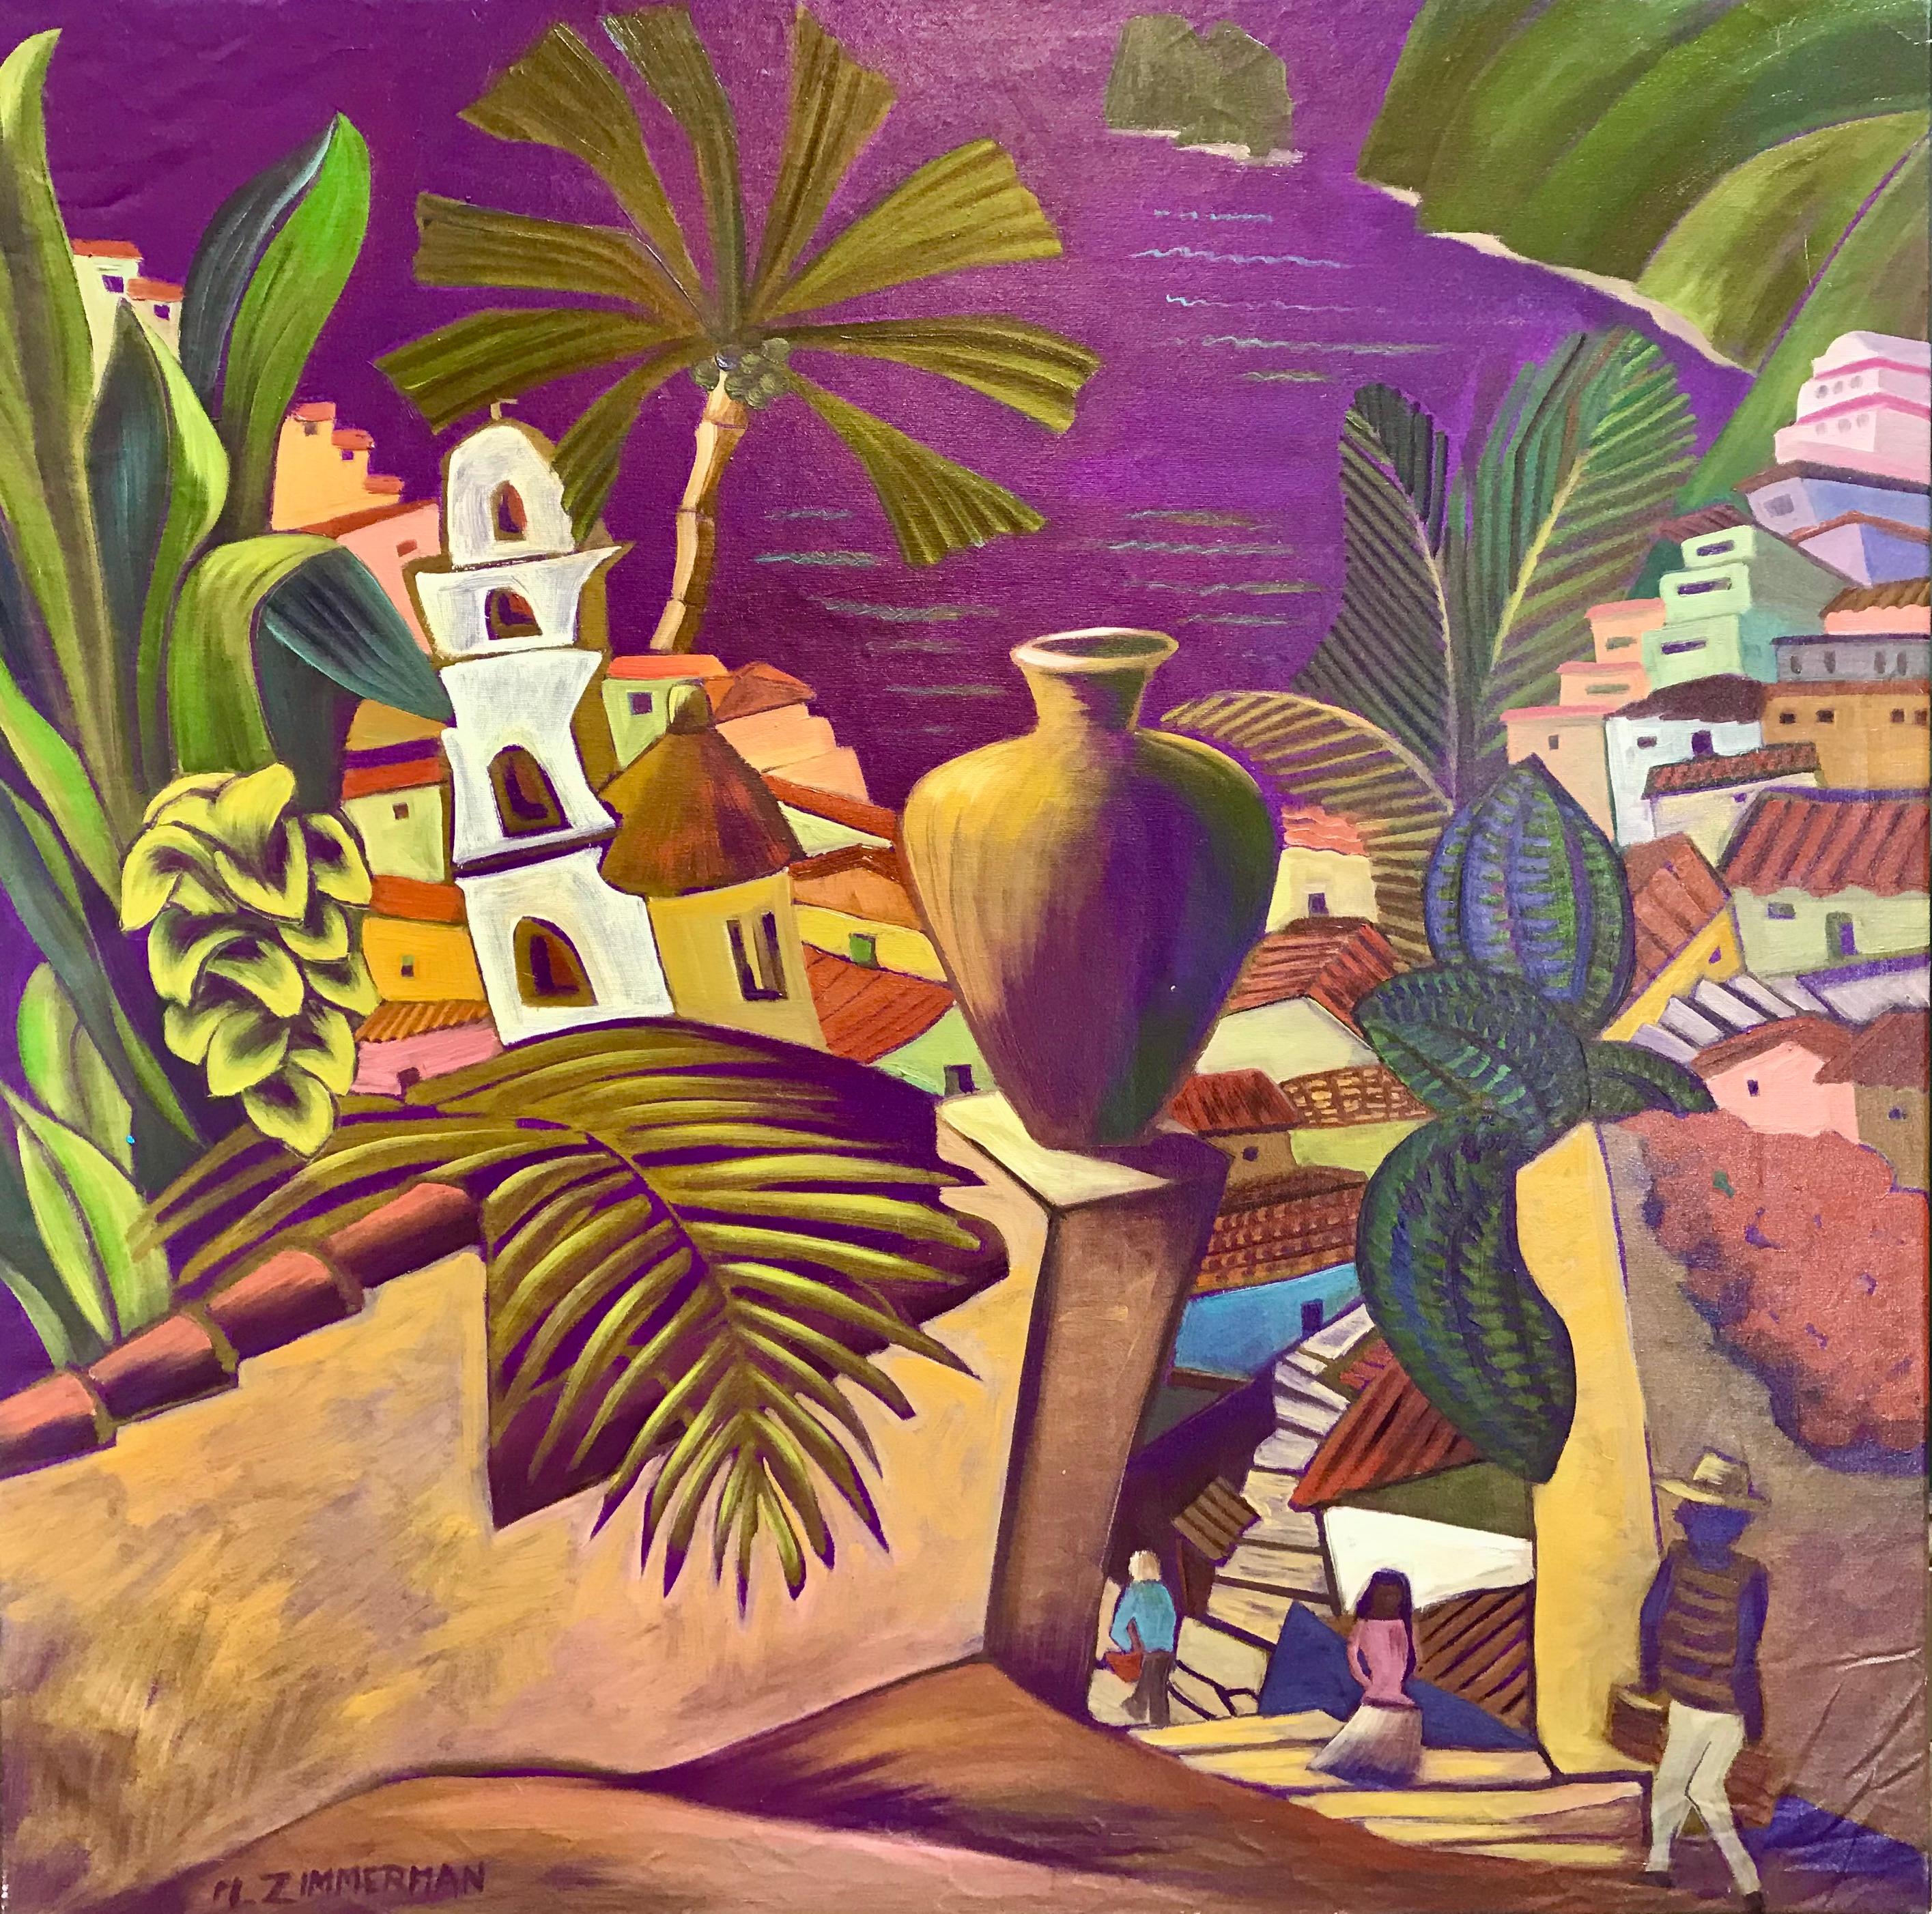 Descendant en cascade vers la mer violette, le village coloré se niche paisiblement dans la splendeur tropicale.

Purple Village - Peinture de paysage - Huile sur toile par Marc Zimmerman

Ce chef-d'œuvre est exposé à la Zimmerman Gallery, Carmel